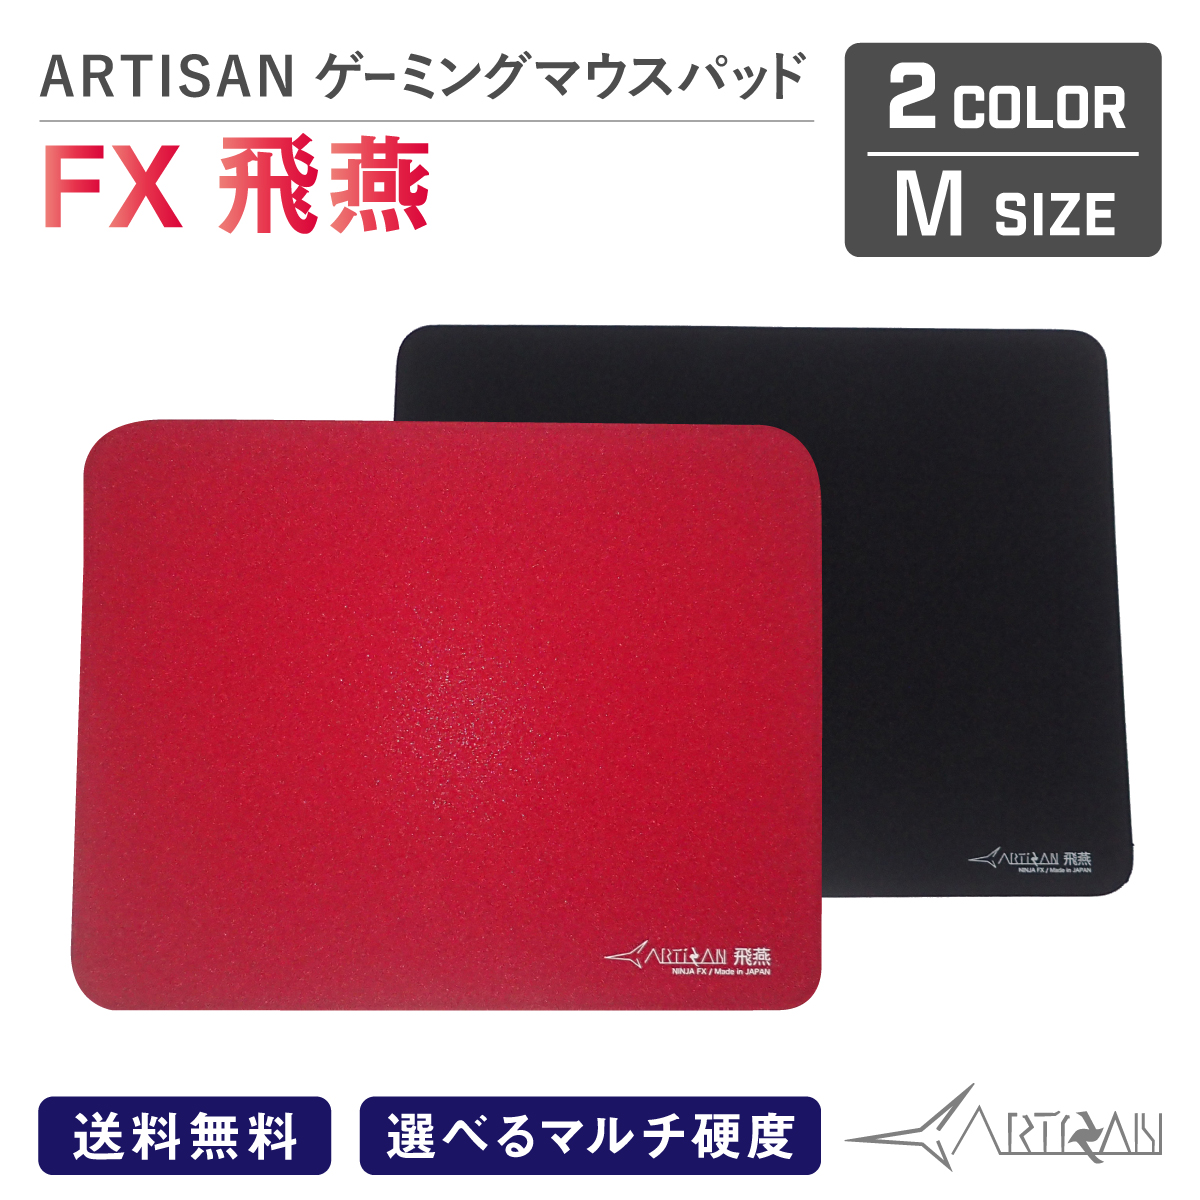 【楽天市場】ARTISAN FX疾風甲 ニンジャブラック Lサイズ 